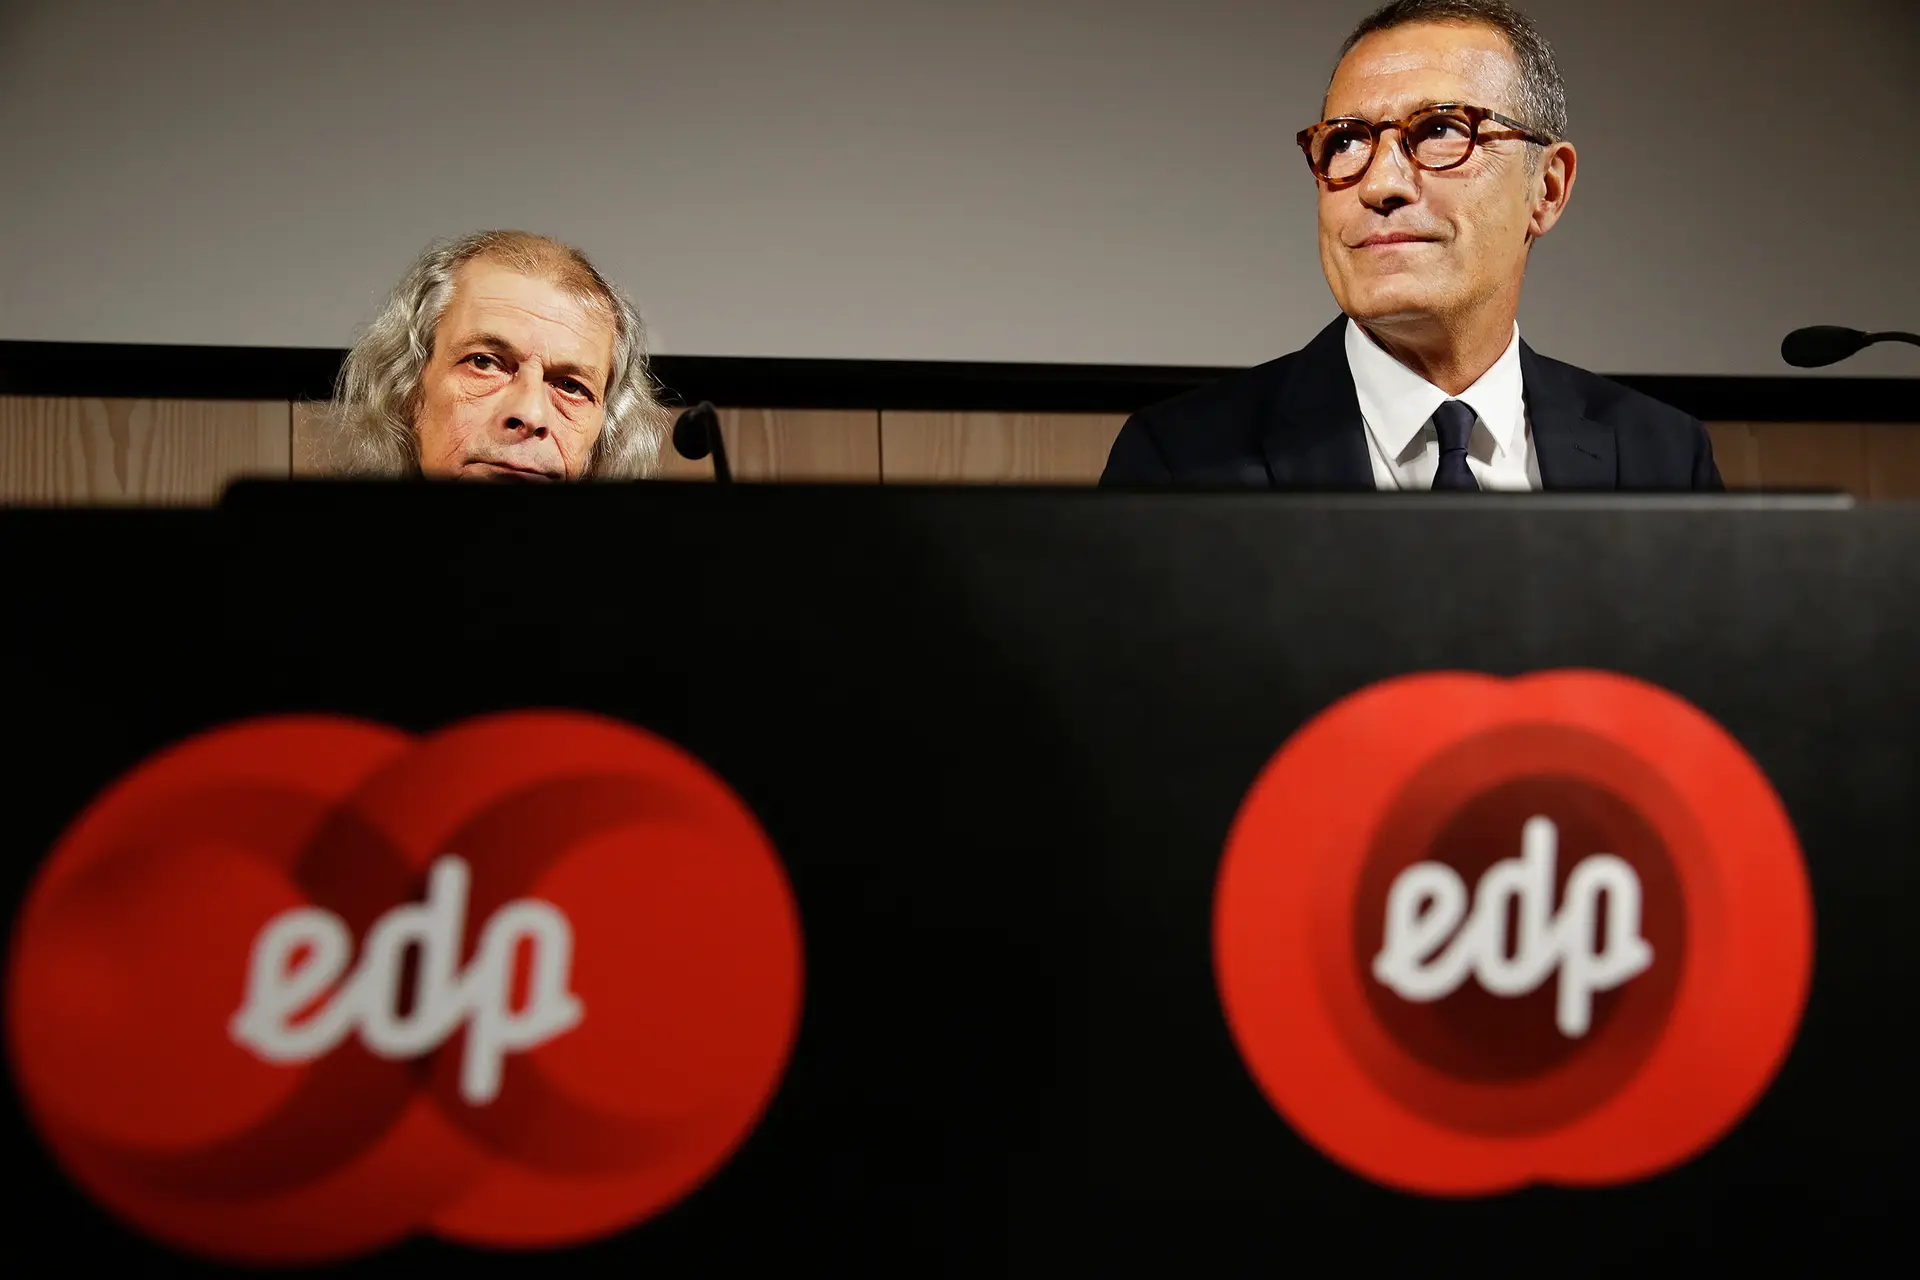 João Manso Neto e António Mexia foram afastados da gestão da EDP em 2020 por decisão judicial